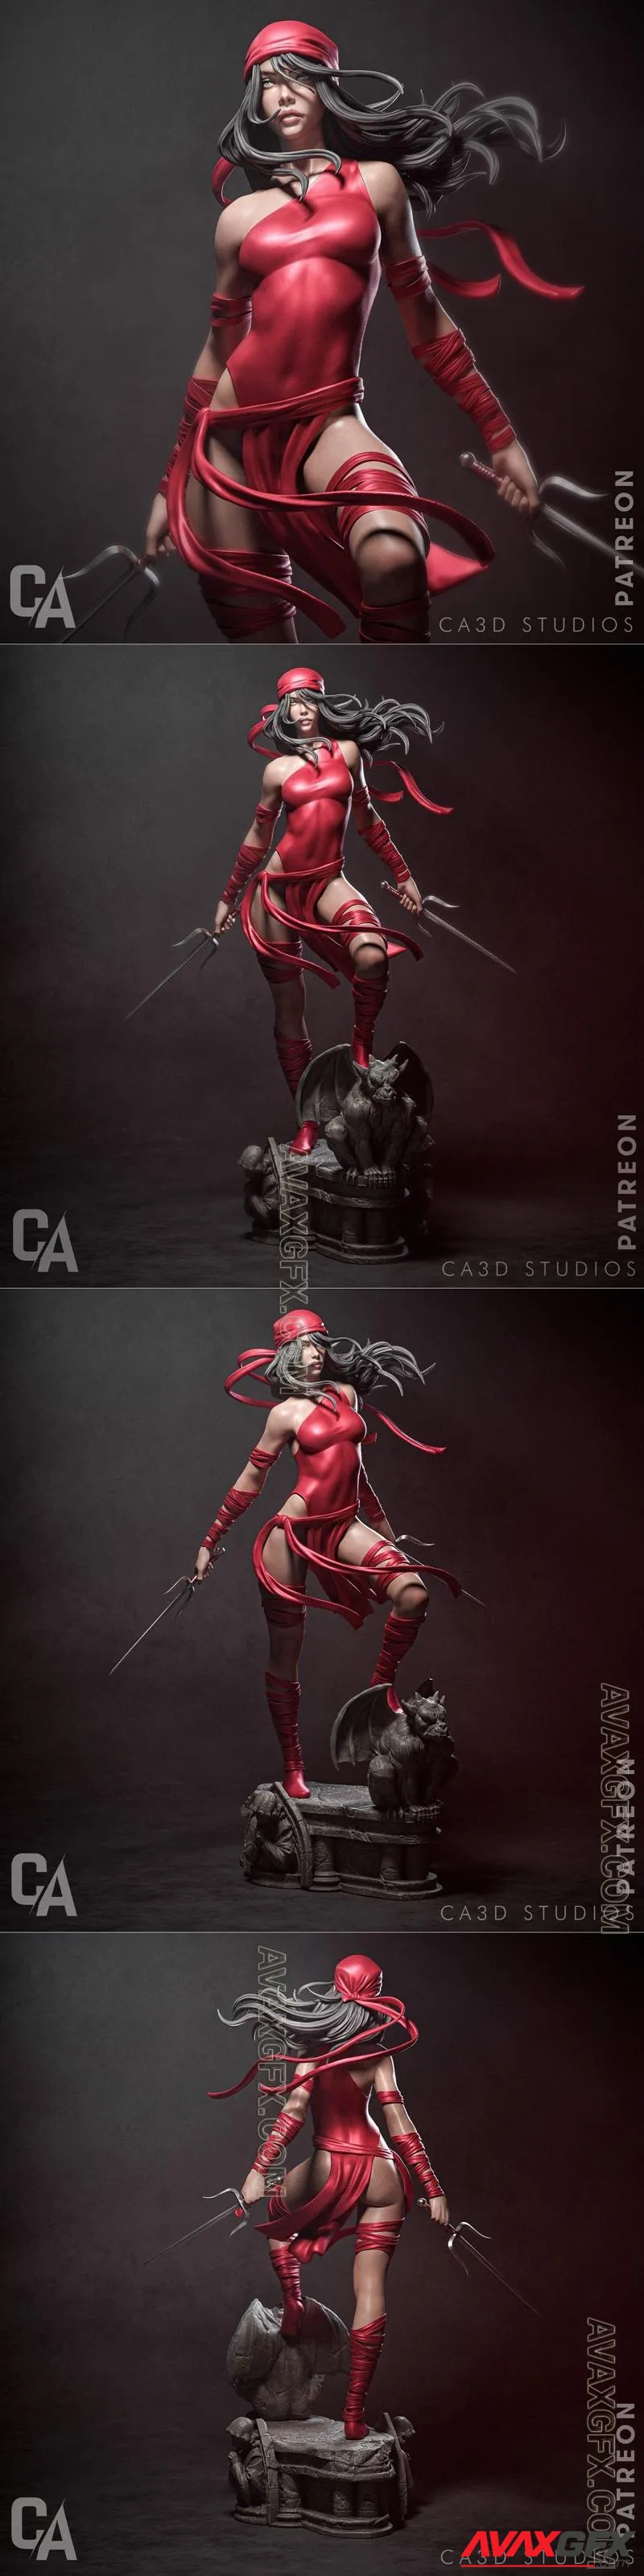 Ca 3d Studios - Elektra - STL 3D Model